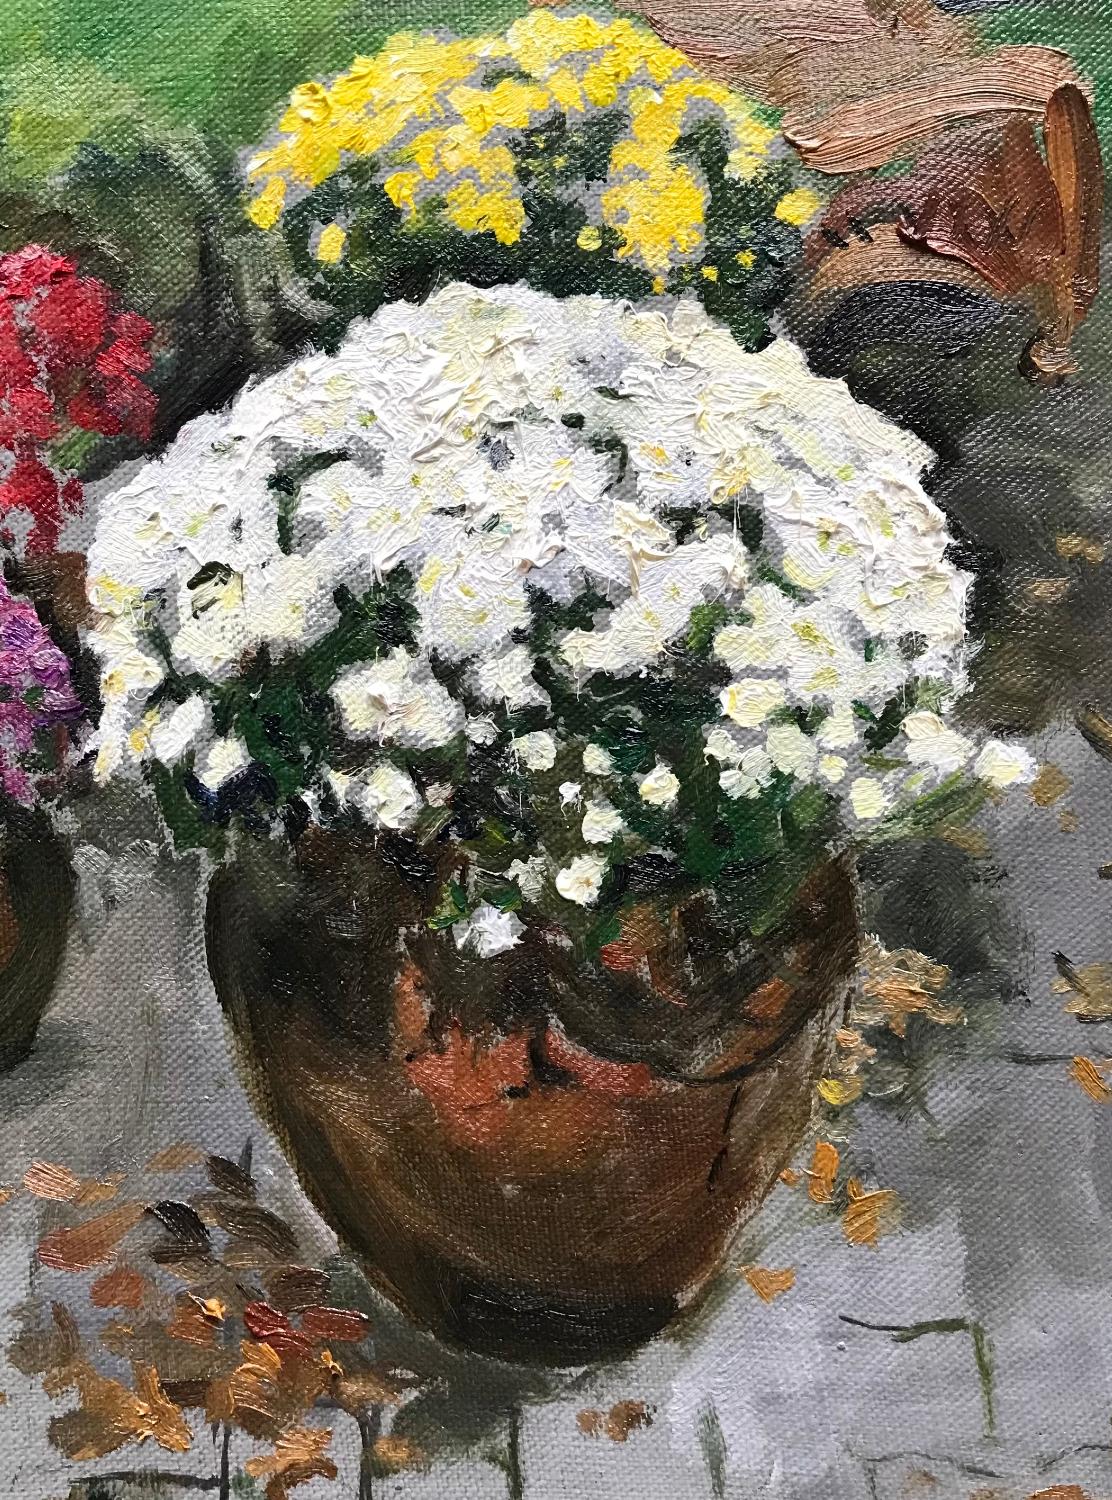  Mums, 12 x 9, Öl, Farben, Schönheit der Natur, Impressionismus, Blumenmuster  – Painting von  Eric Santoli